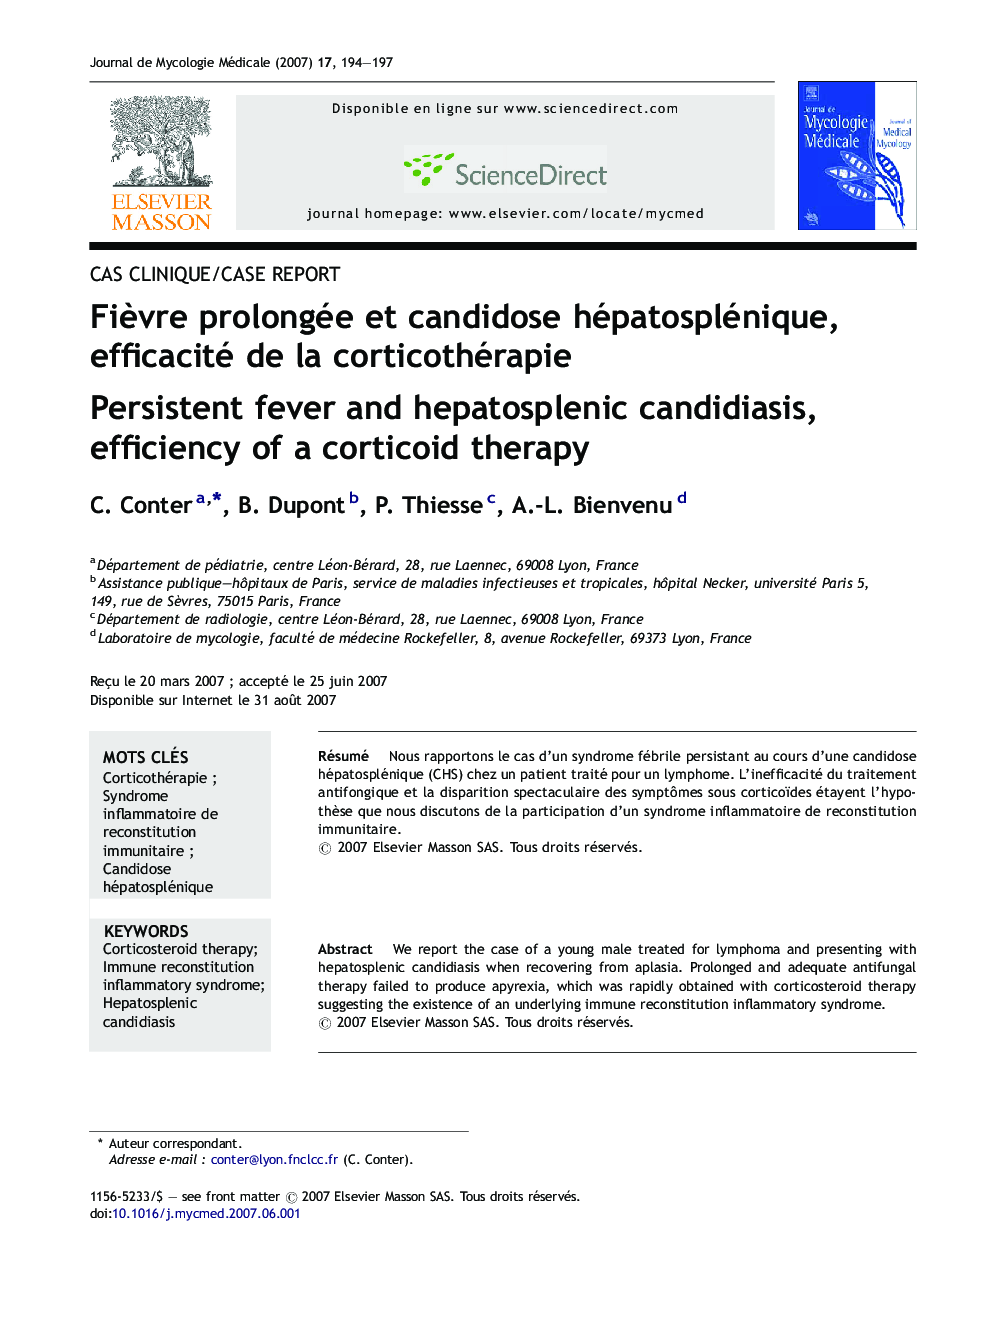 Fièvre prolongée et candidose hépatosplénique, efficacité de la corticothérapie